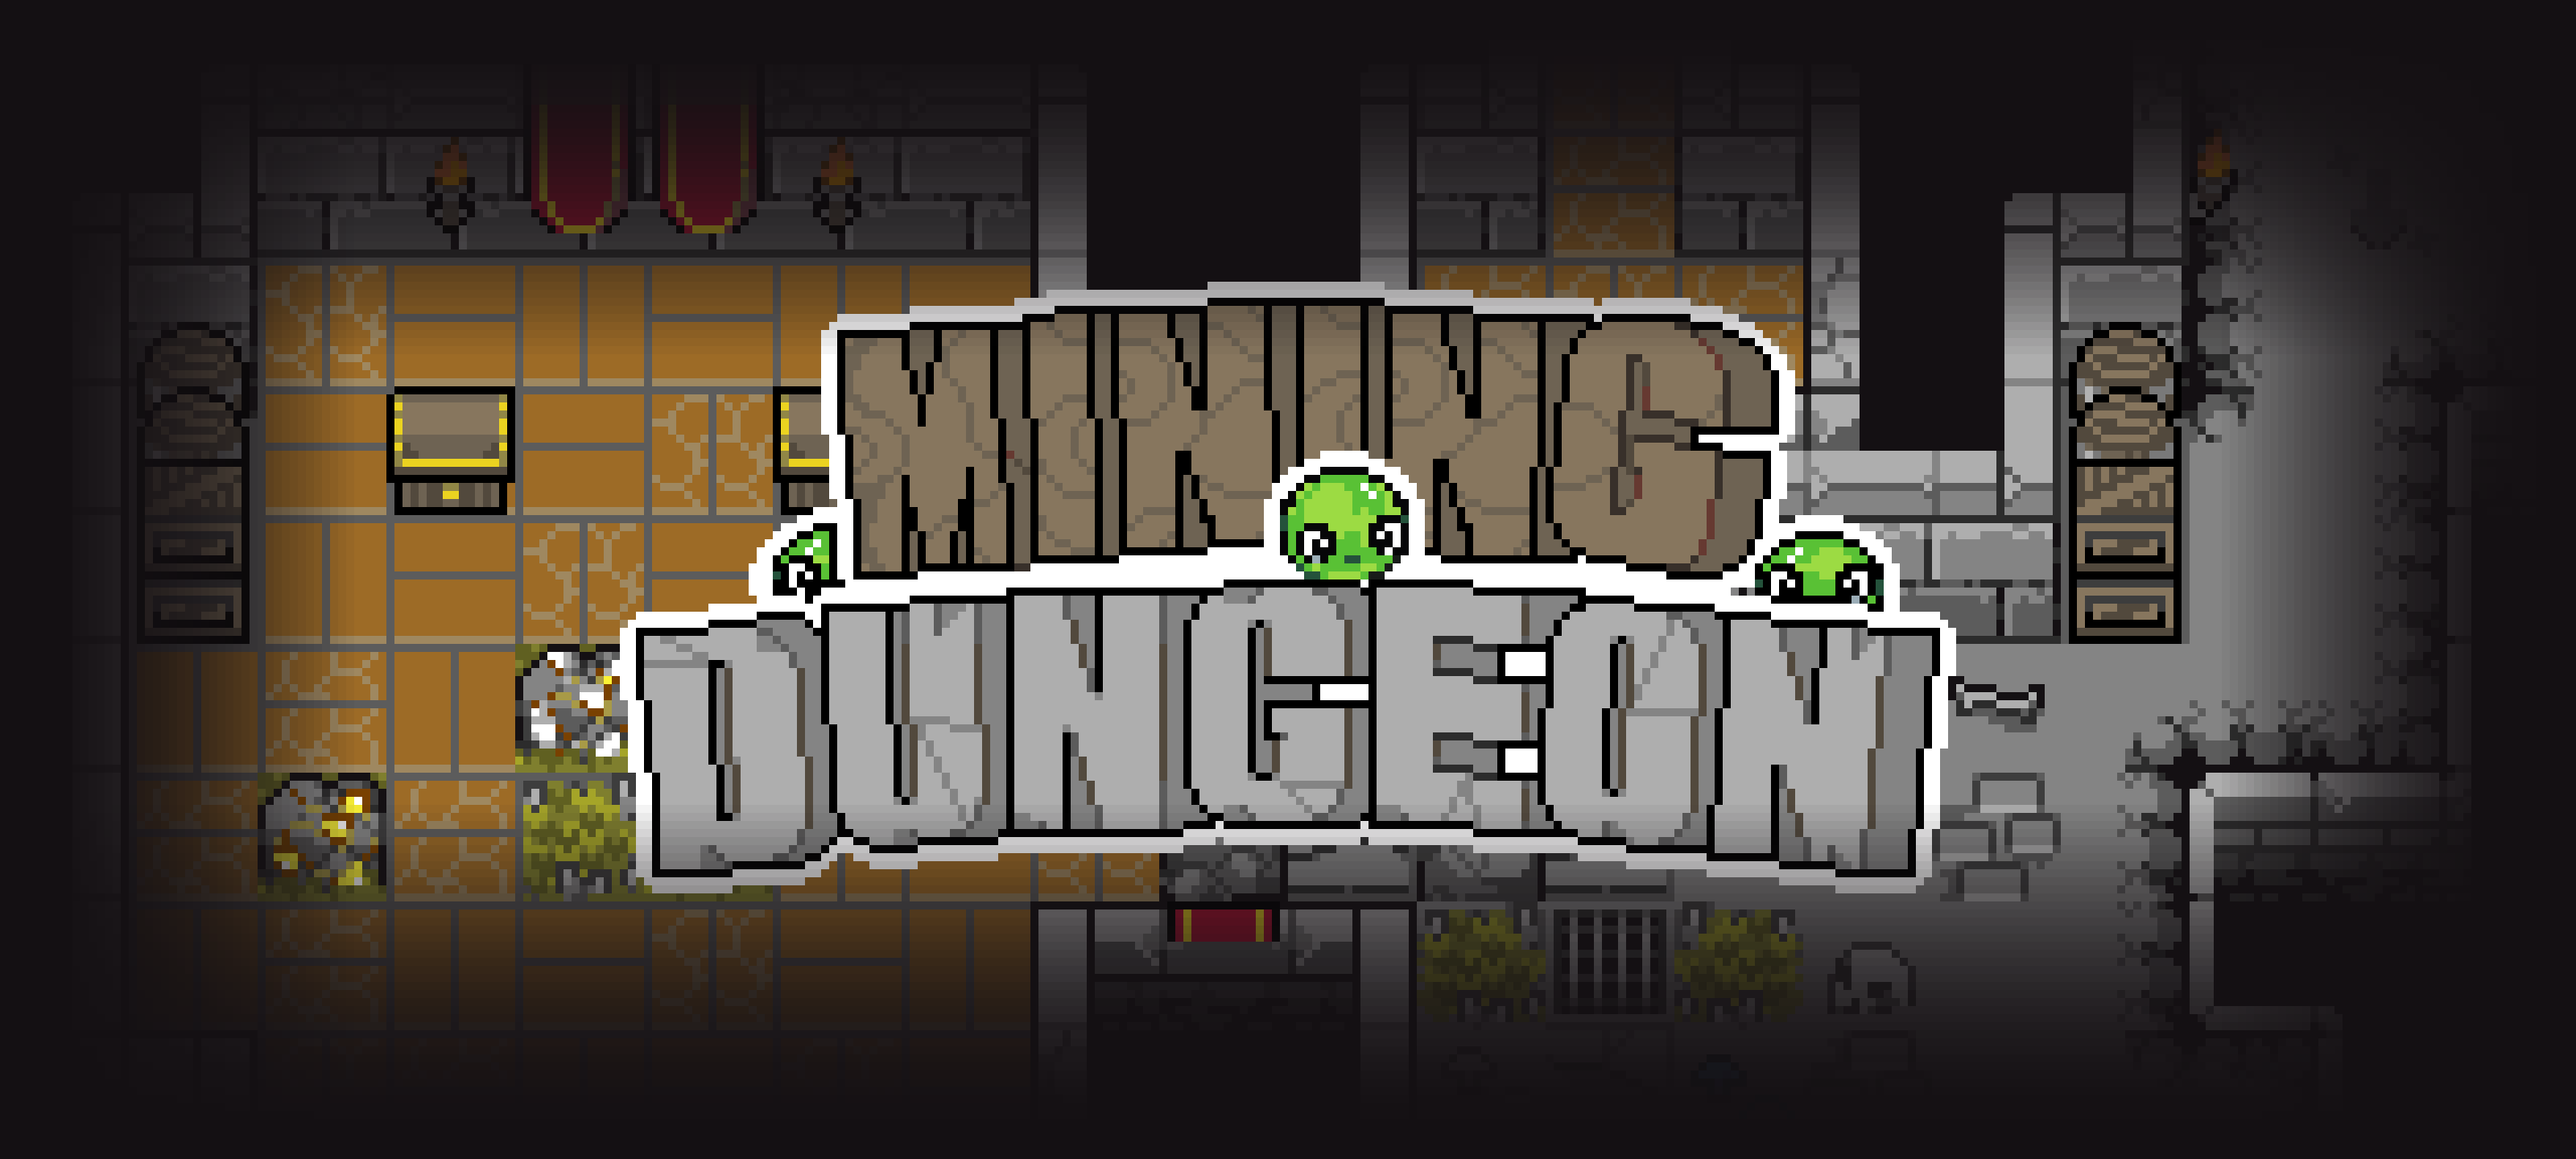 Mining Dungeon - Asset pack[16x16]